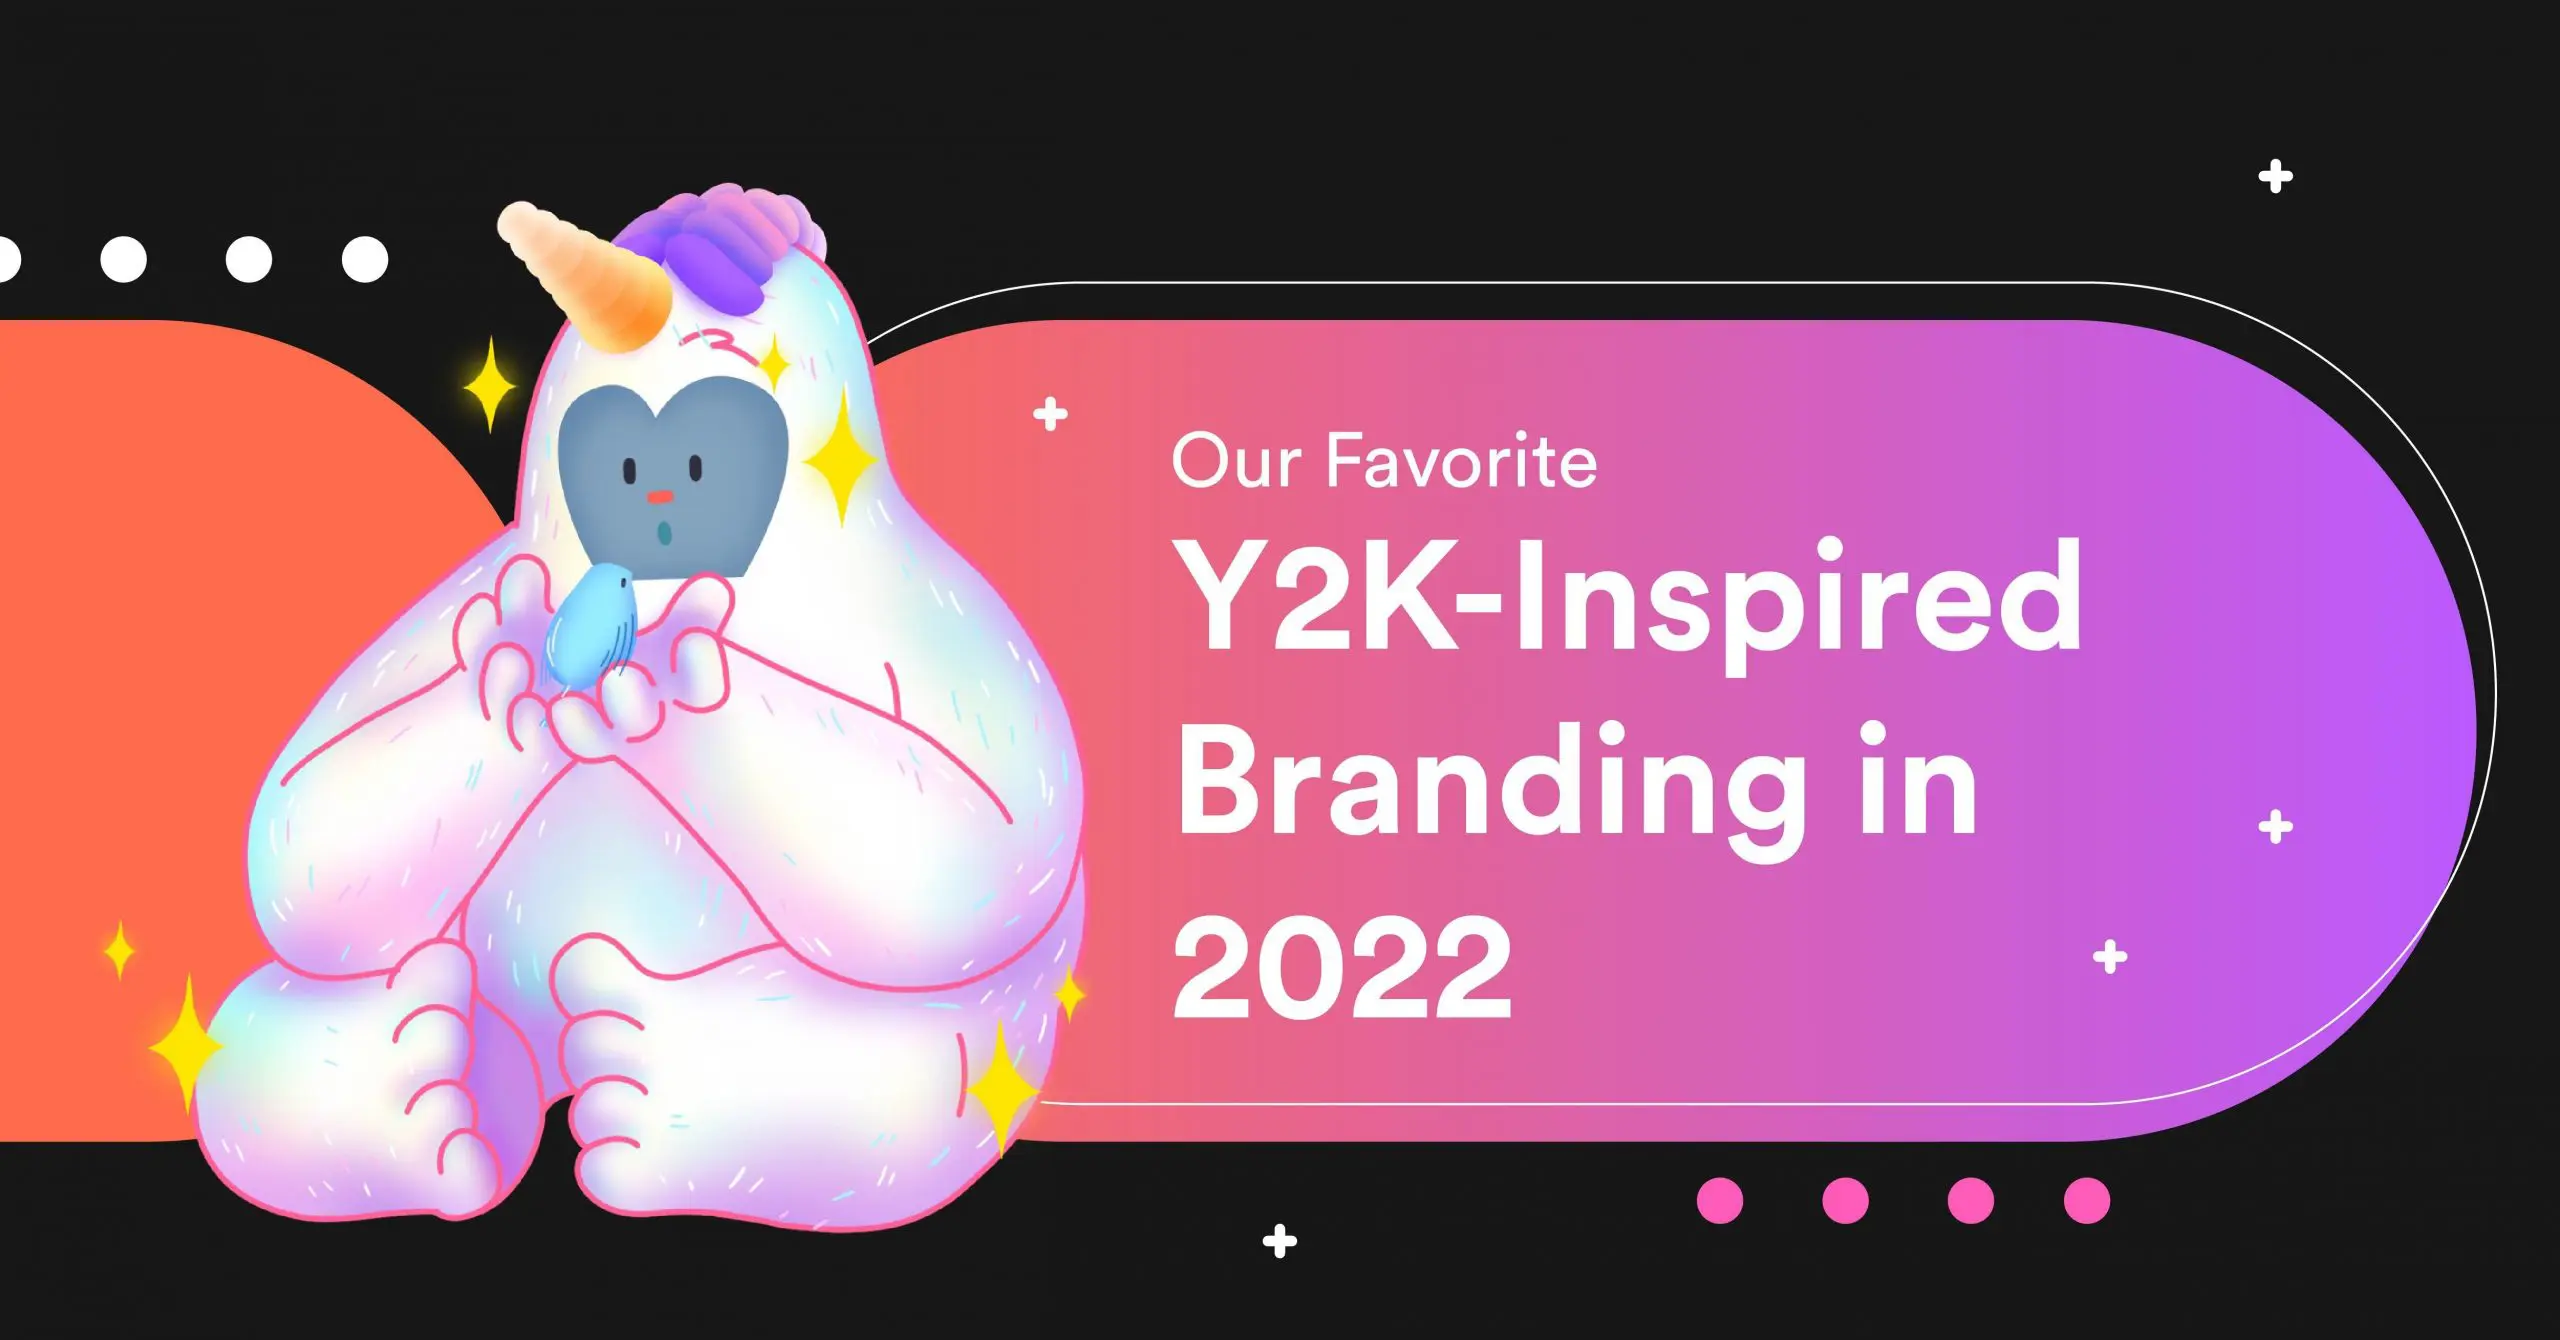 Our Favorite Y2K-Inspired Branding in 2022